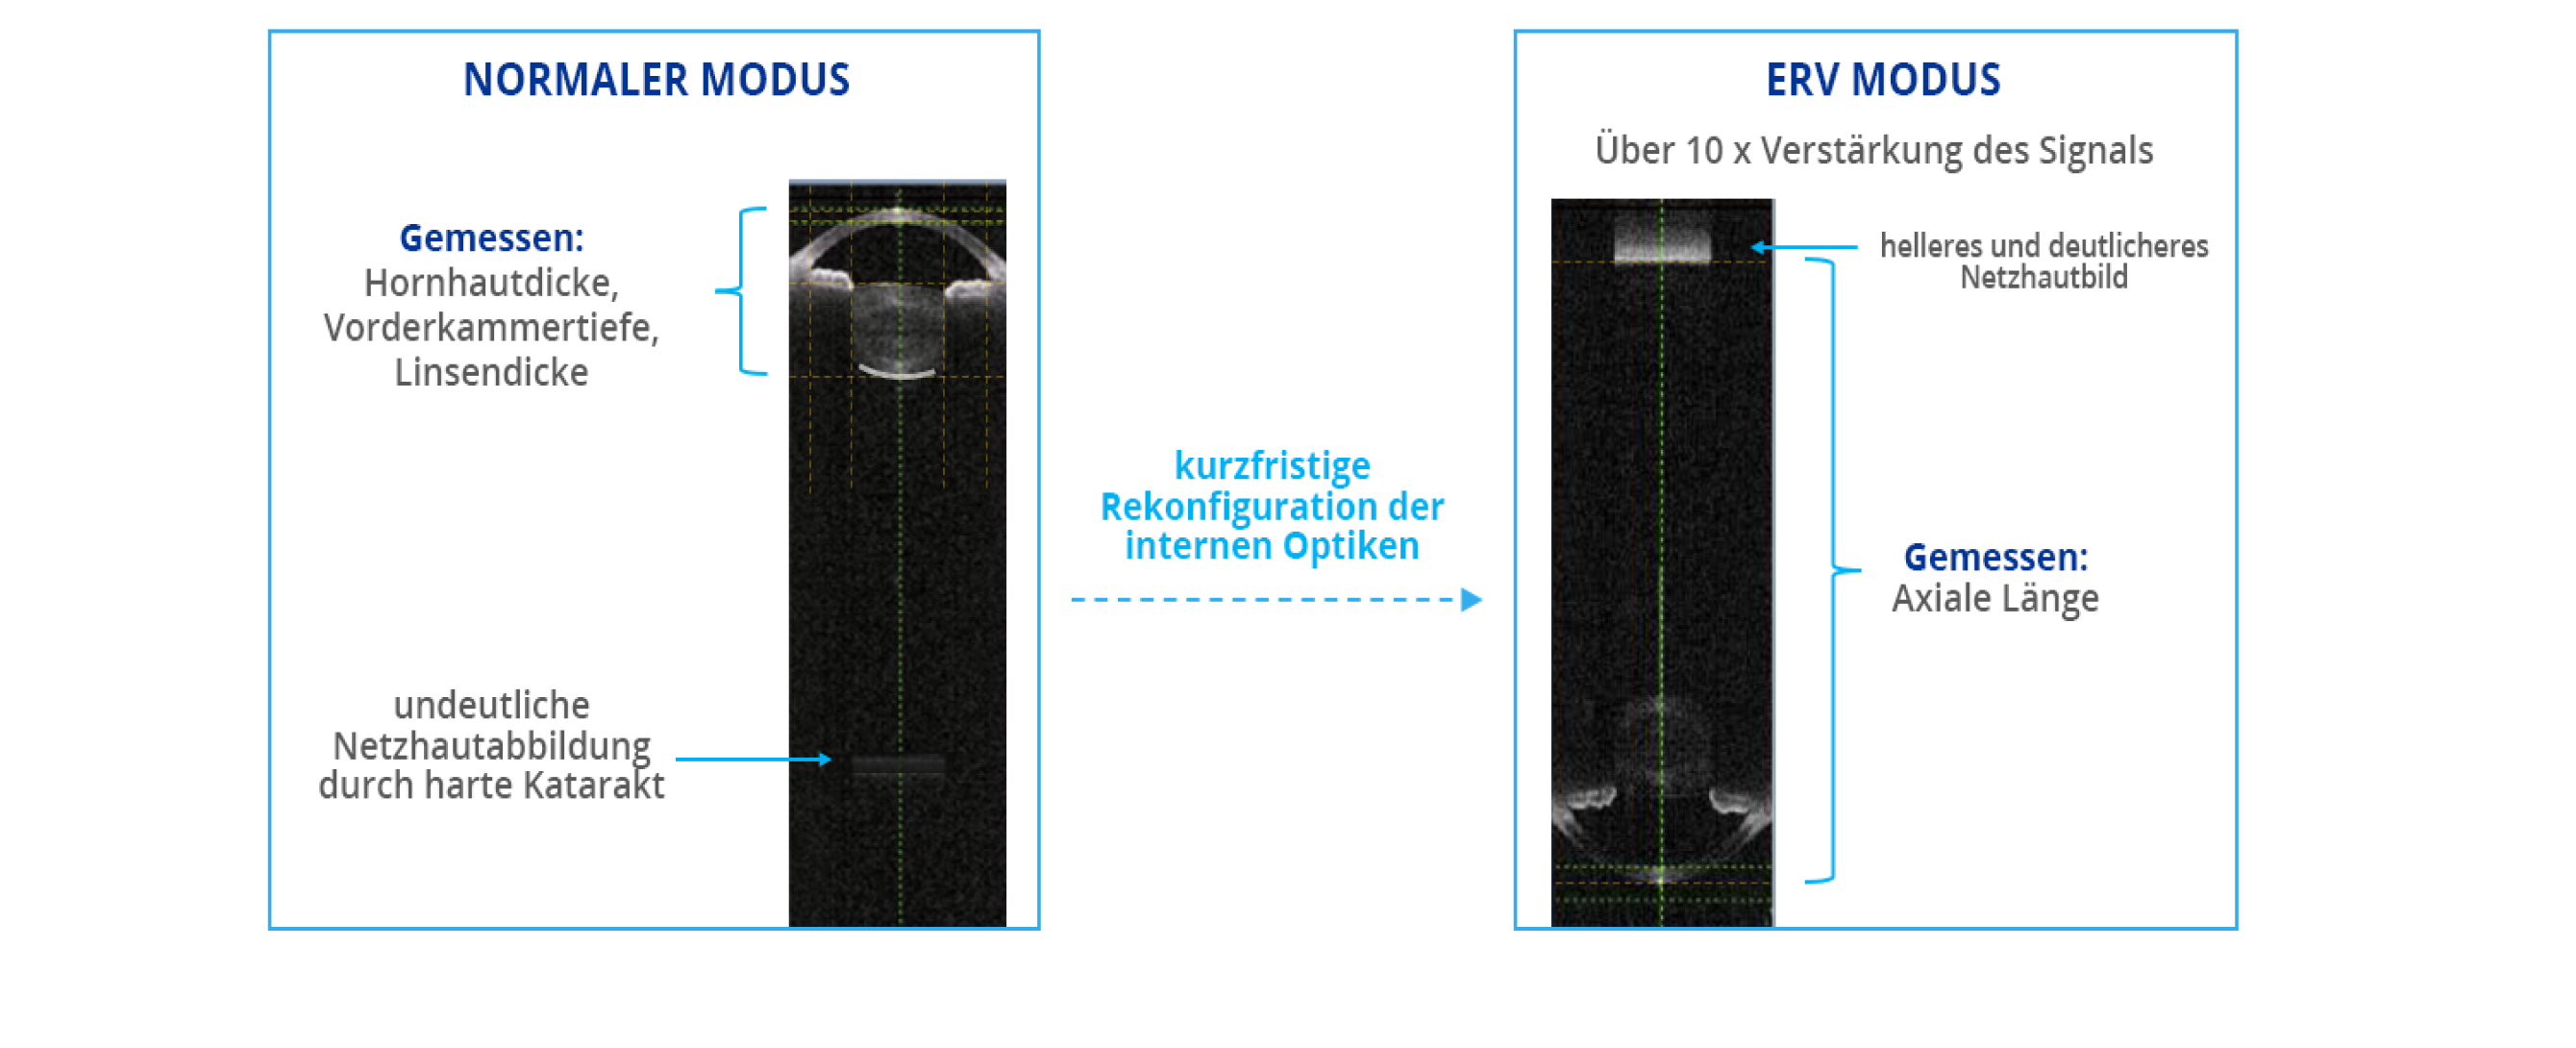 Ein Vergleich von Biometrieaufnahmen, die mit dem ARGOS Biometer in normalem Modus und im erweiterten Netzhautvisualisierungsmodus (ERV) aufgenommen wurden. Der ERV-Modus rekonfiguriert die internen Optiken, um das Signal um das 10-Fche im Vergleich zum normalen Modus zu verstärken.